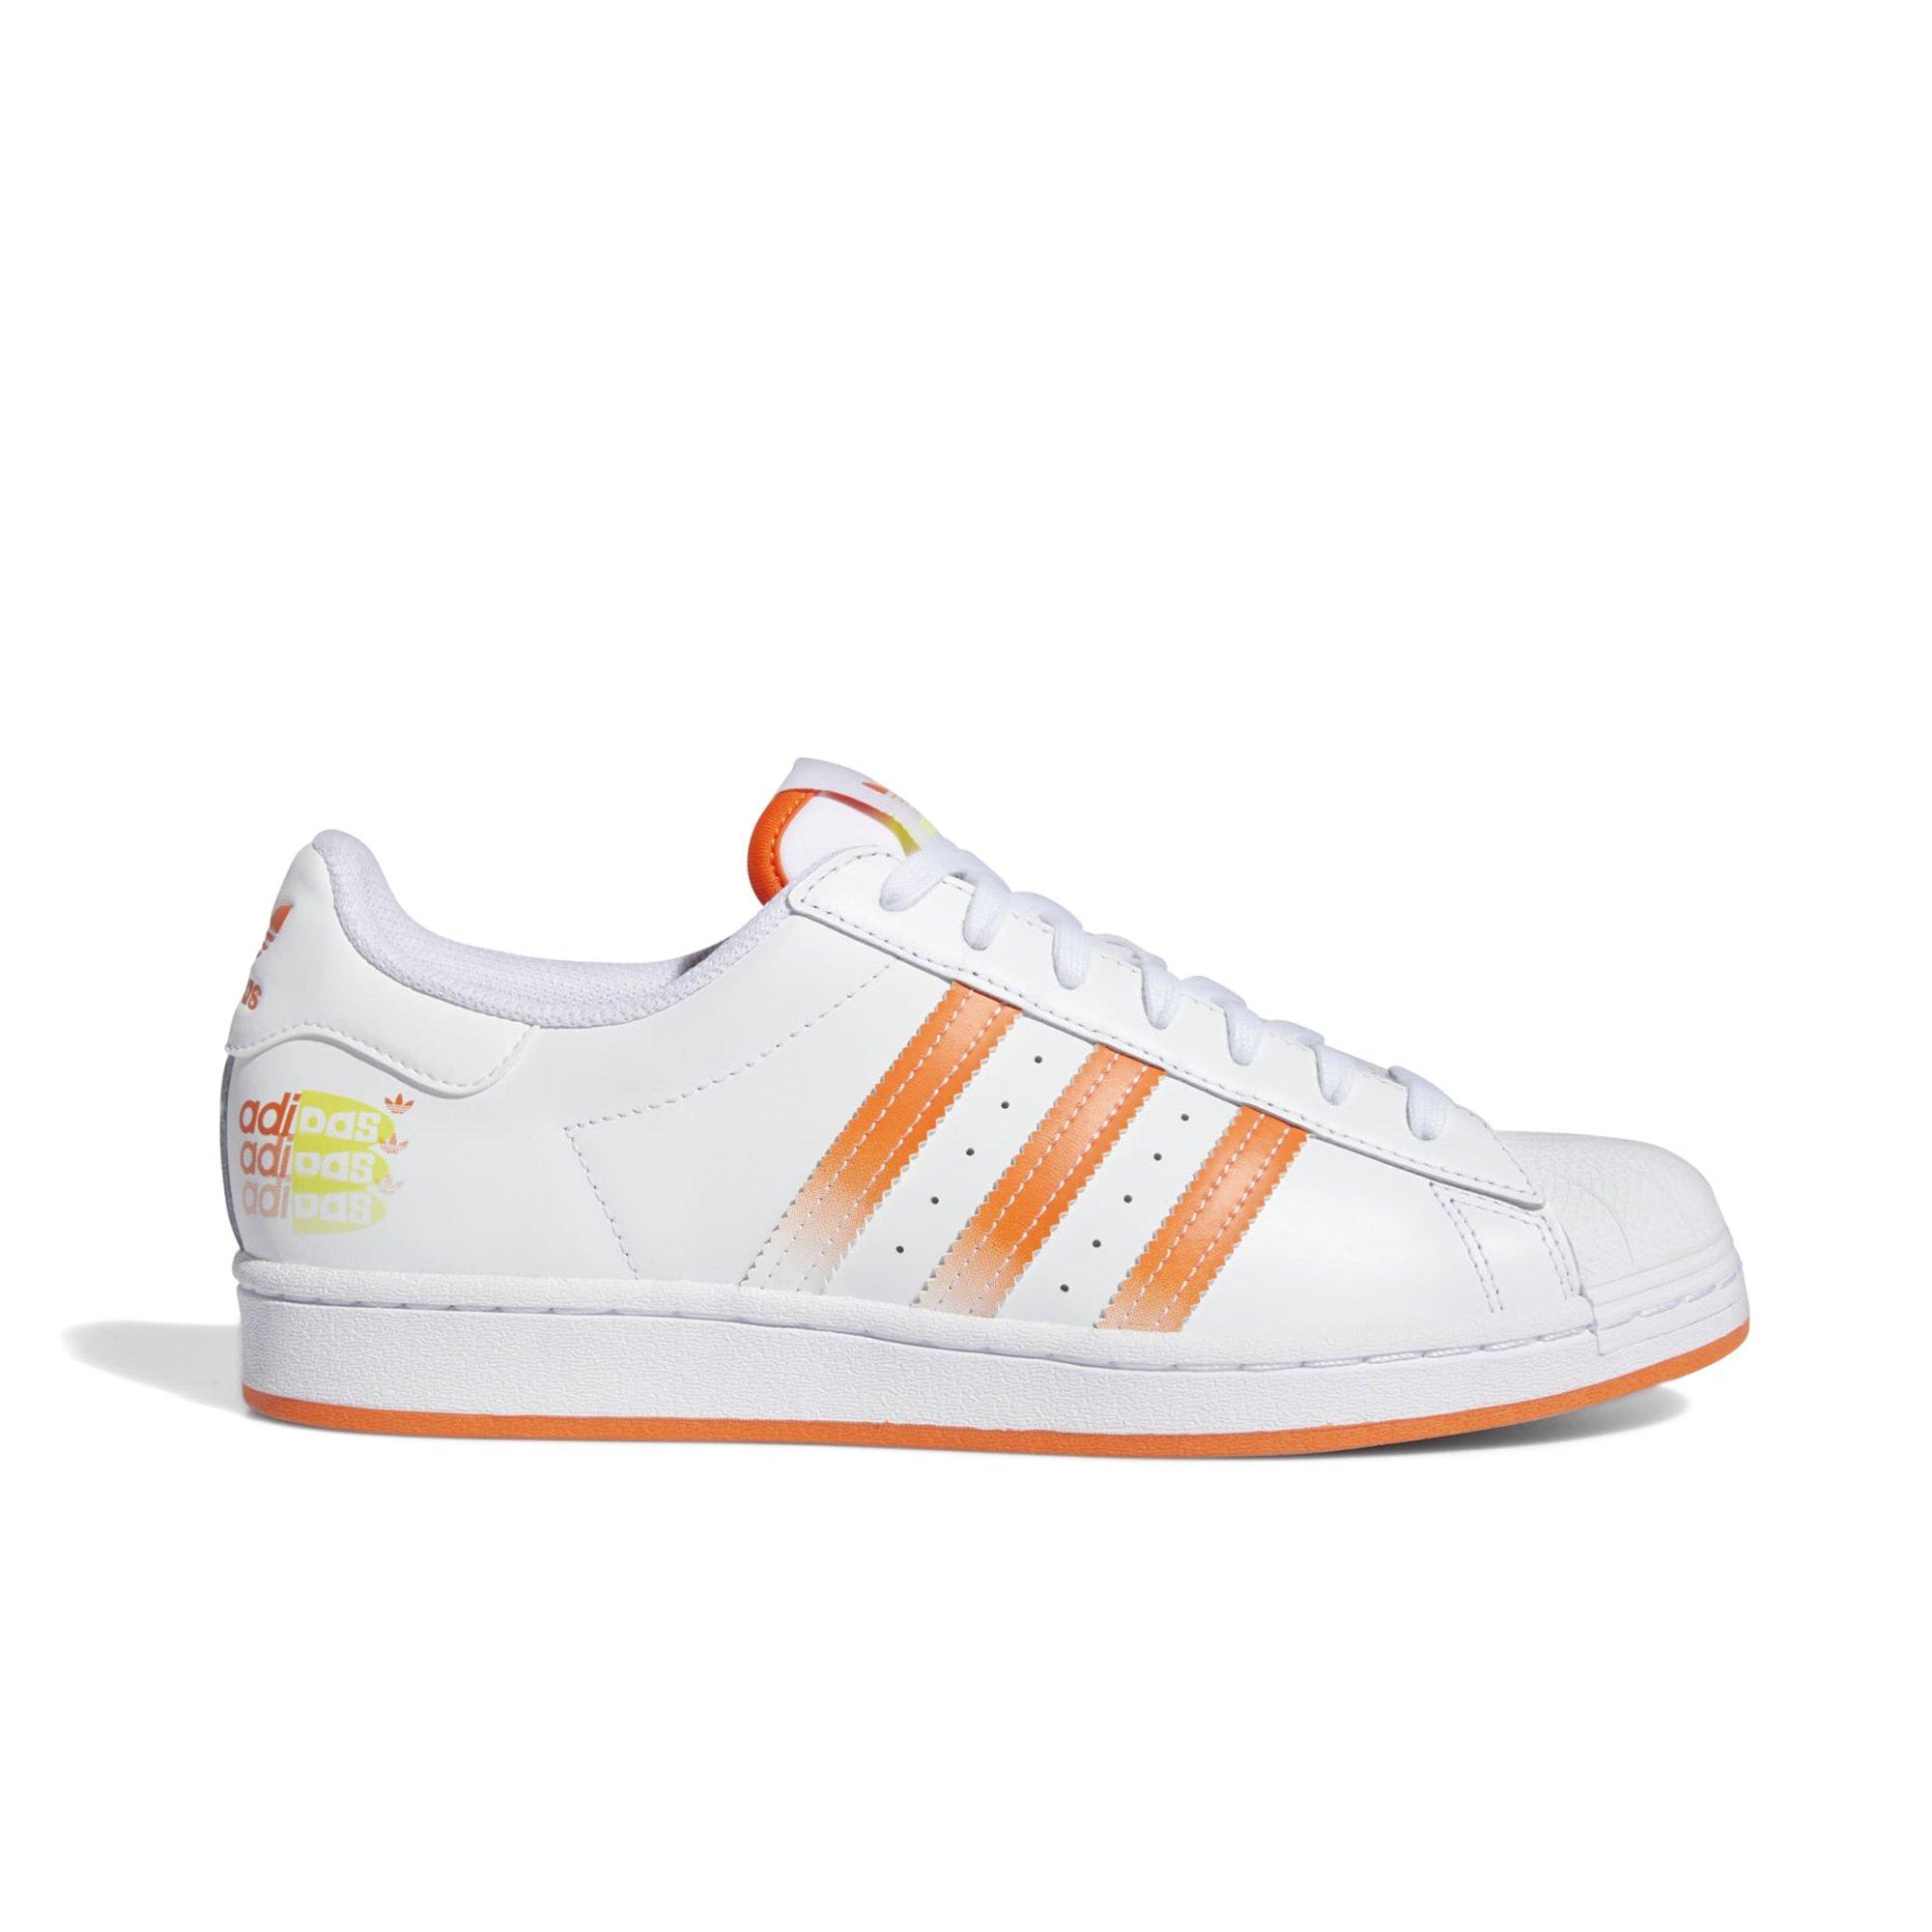 adidas Superstar White/Orange Men's Shoe - Hibbett